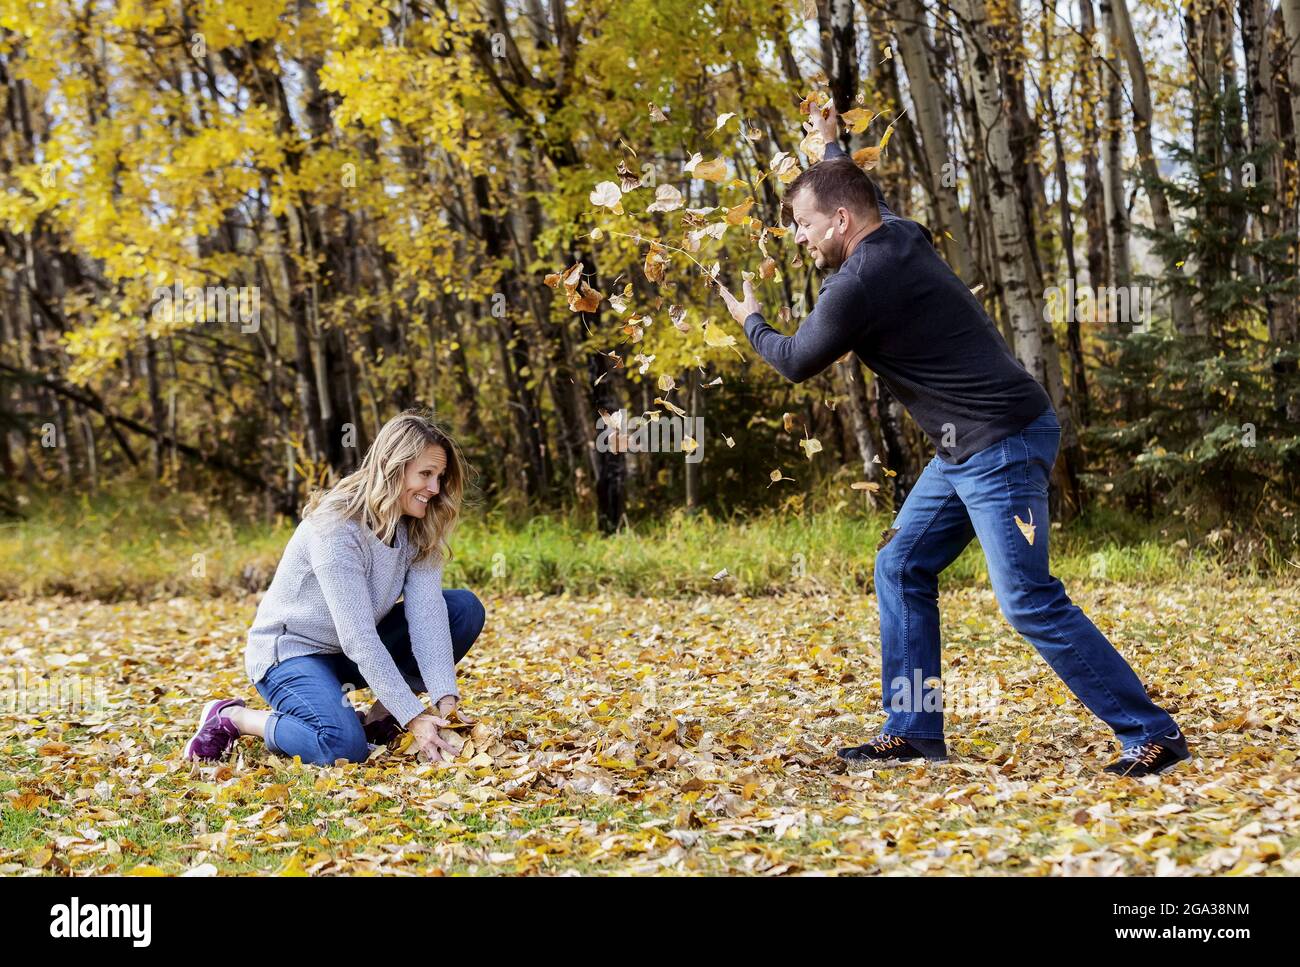 Un couple mature et marié qui passe du temps ensemble dans un parc de la ville pendant la saison d'automne, s'amusant à jeter des feuilles mortes les unes contre les autres Banque D'Images